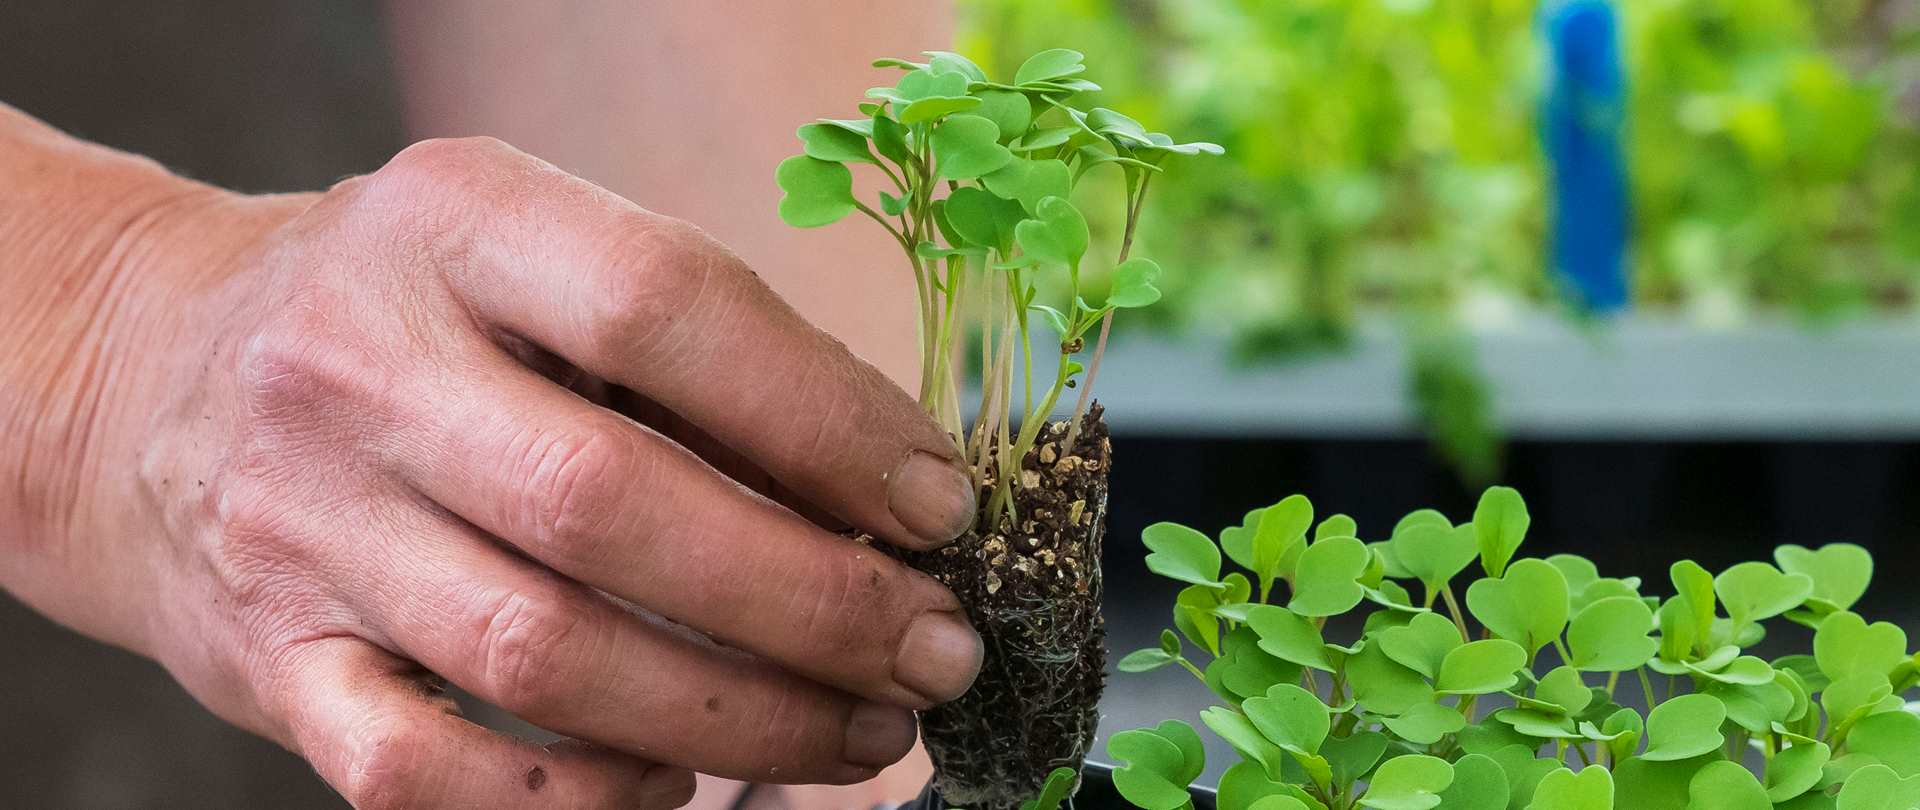 Hands tending to seedlings